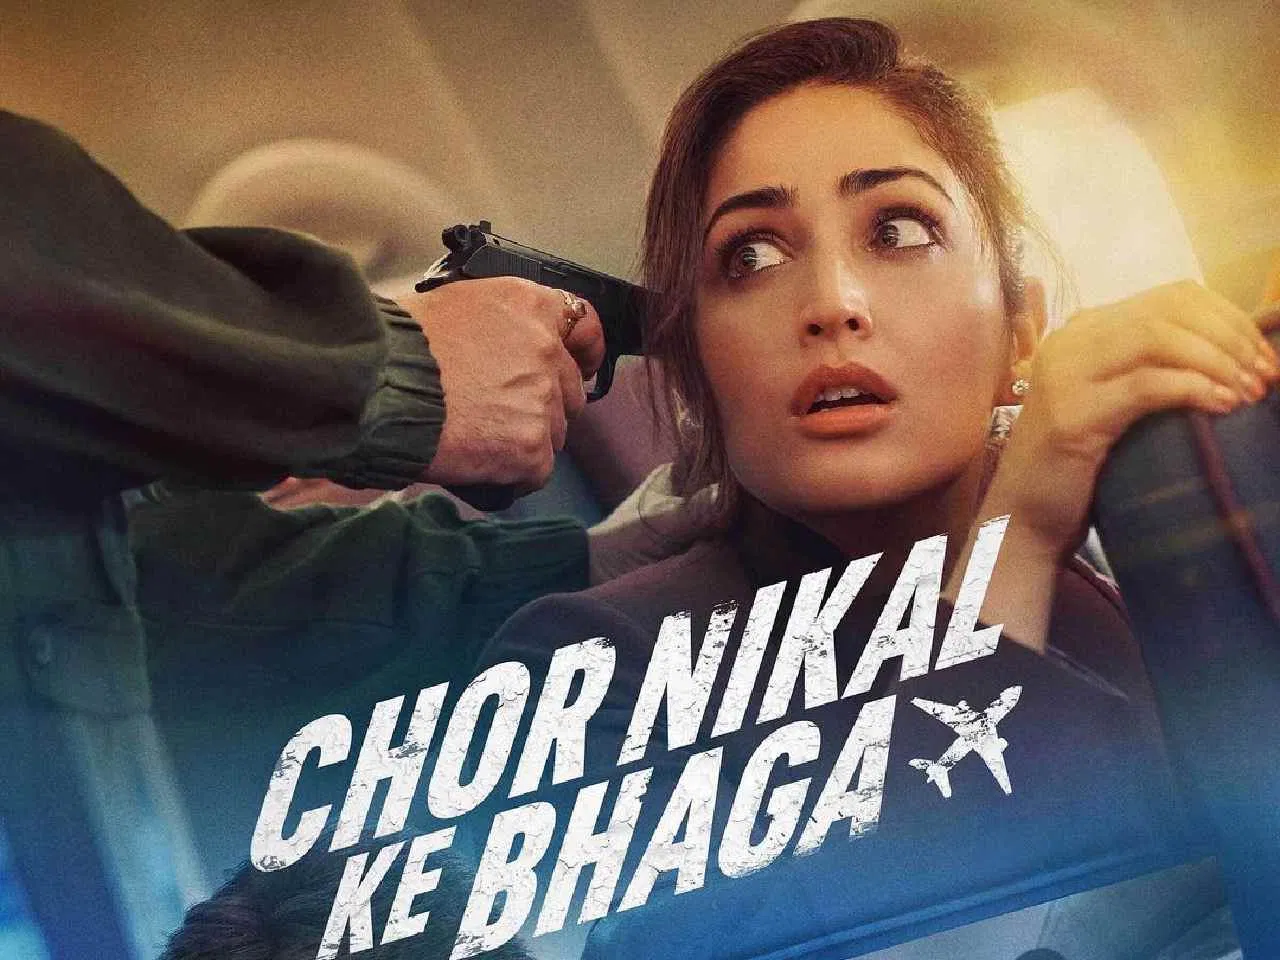 Chor Nikal Ke Bhaga 2023 movie review